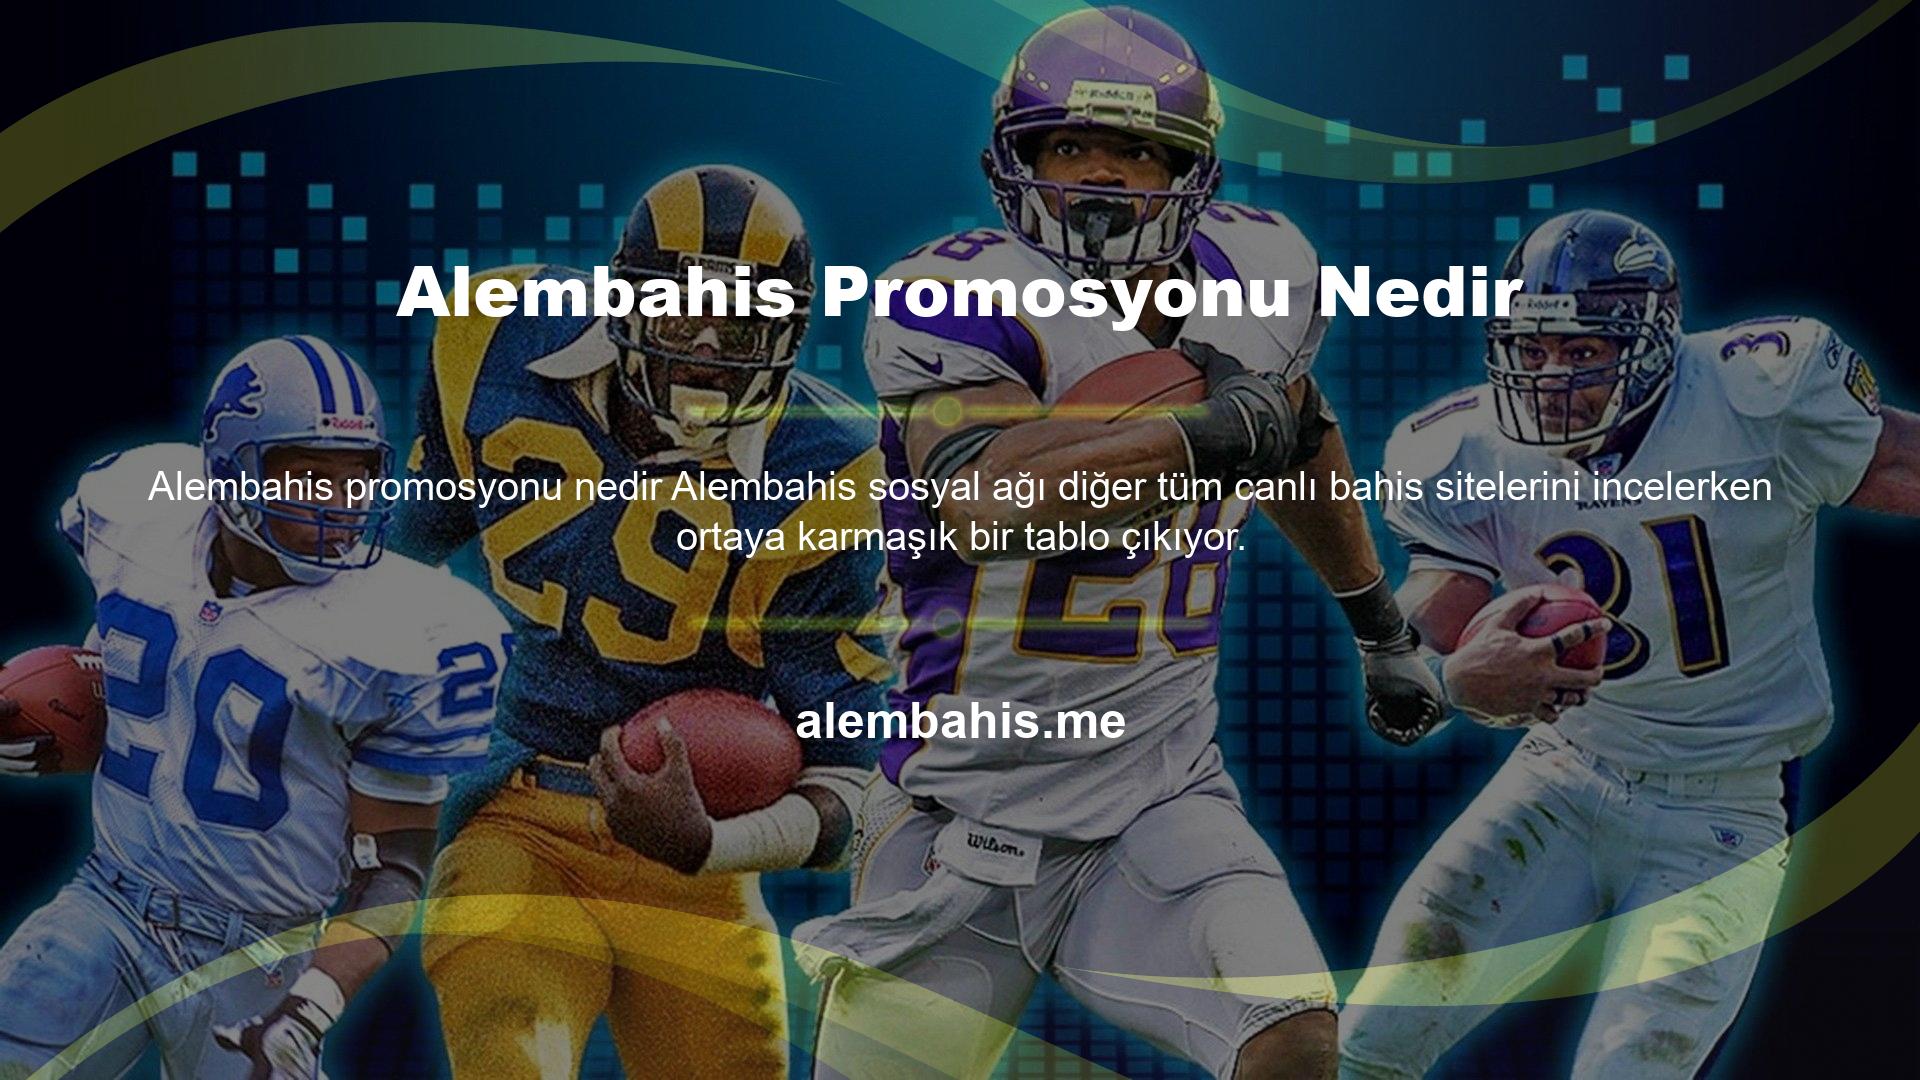 Alembahis sosyal ağı, Alembahis sosyal ağ platformunu kullanıyor ancak web sitesinde yalnızca tek yönlü iletişim, duyuru ve haber paylaşımı